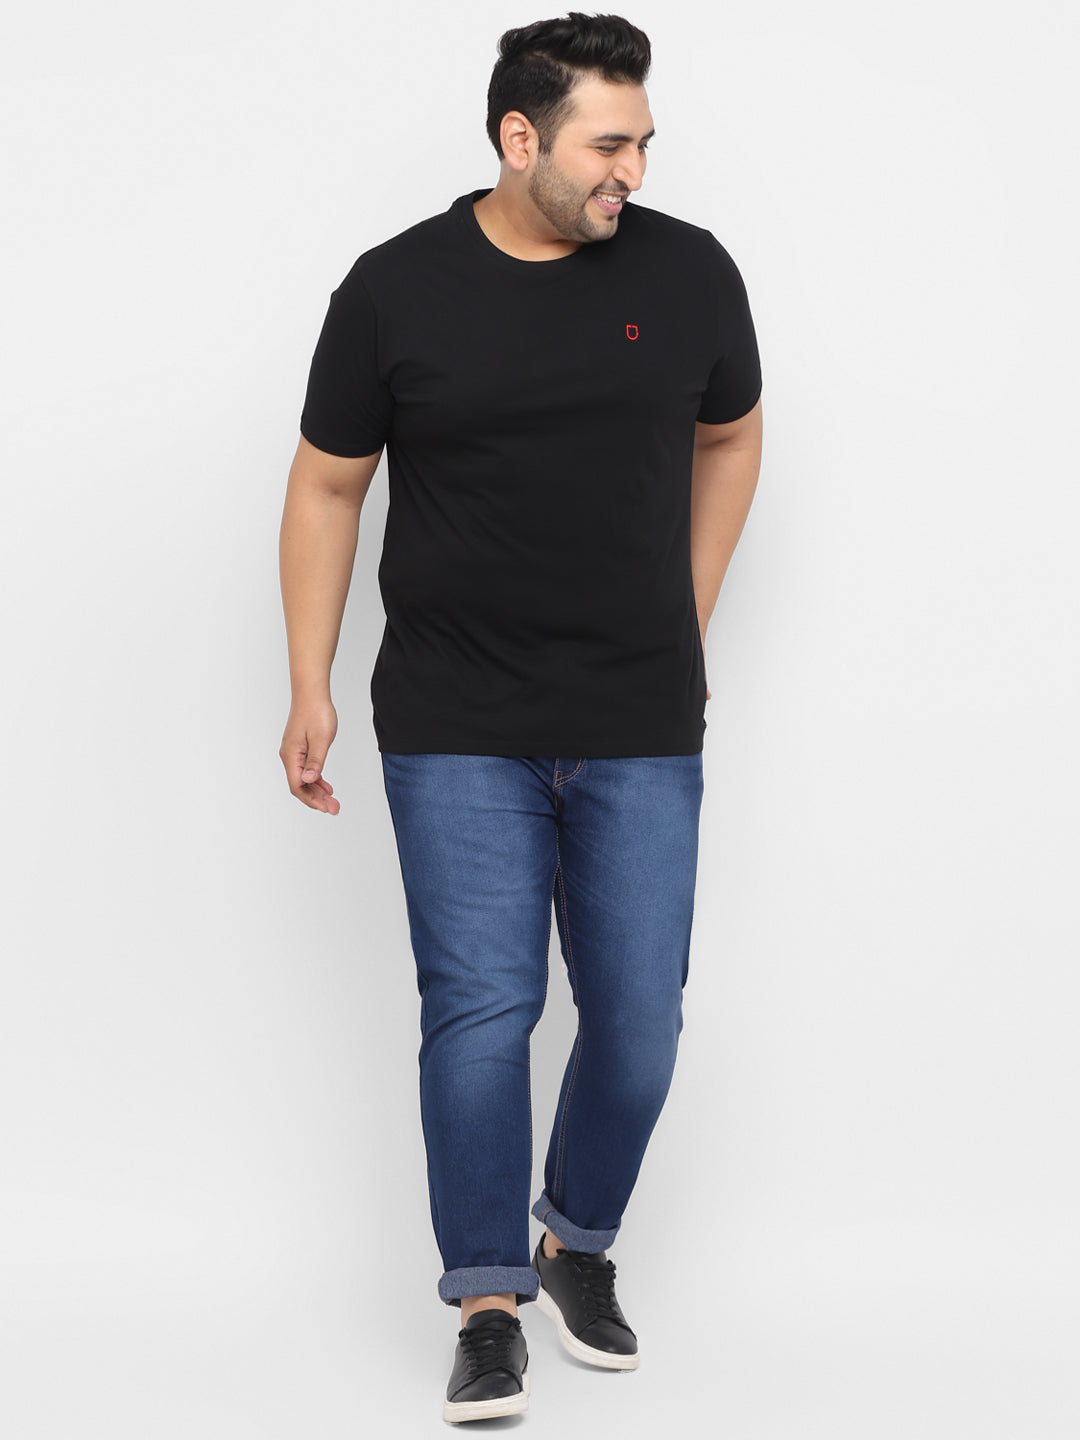 Plus Men's Black Solid Regular Fit Round Neck Cotton T-Shirt